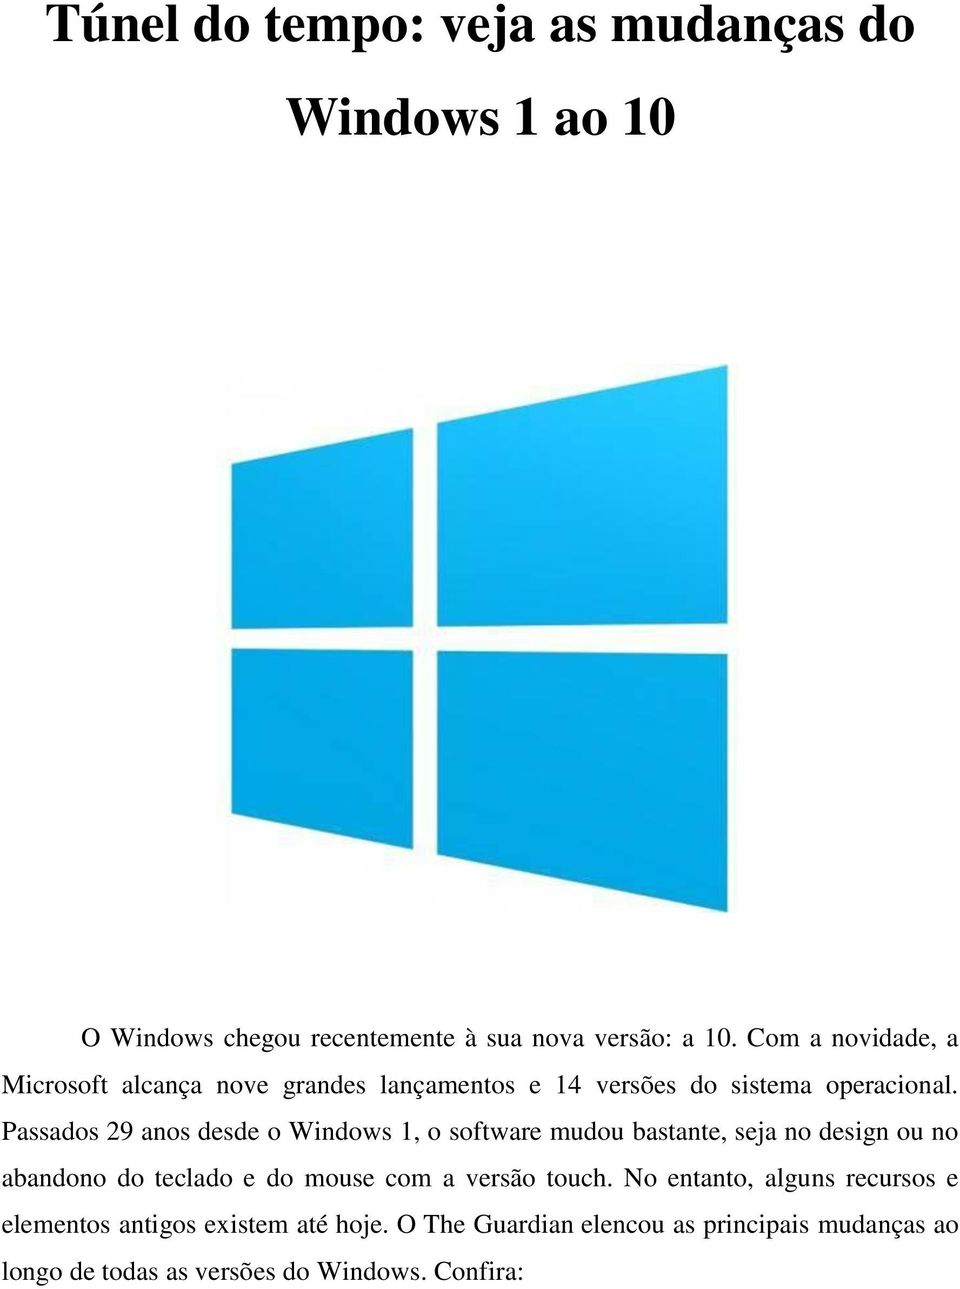 Passados 29 anos desde o Windows 1, o software mudou bastante, seja no design ou no abandono do teclado e do mouse com a